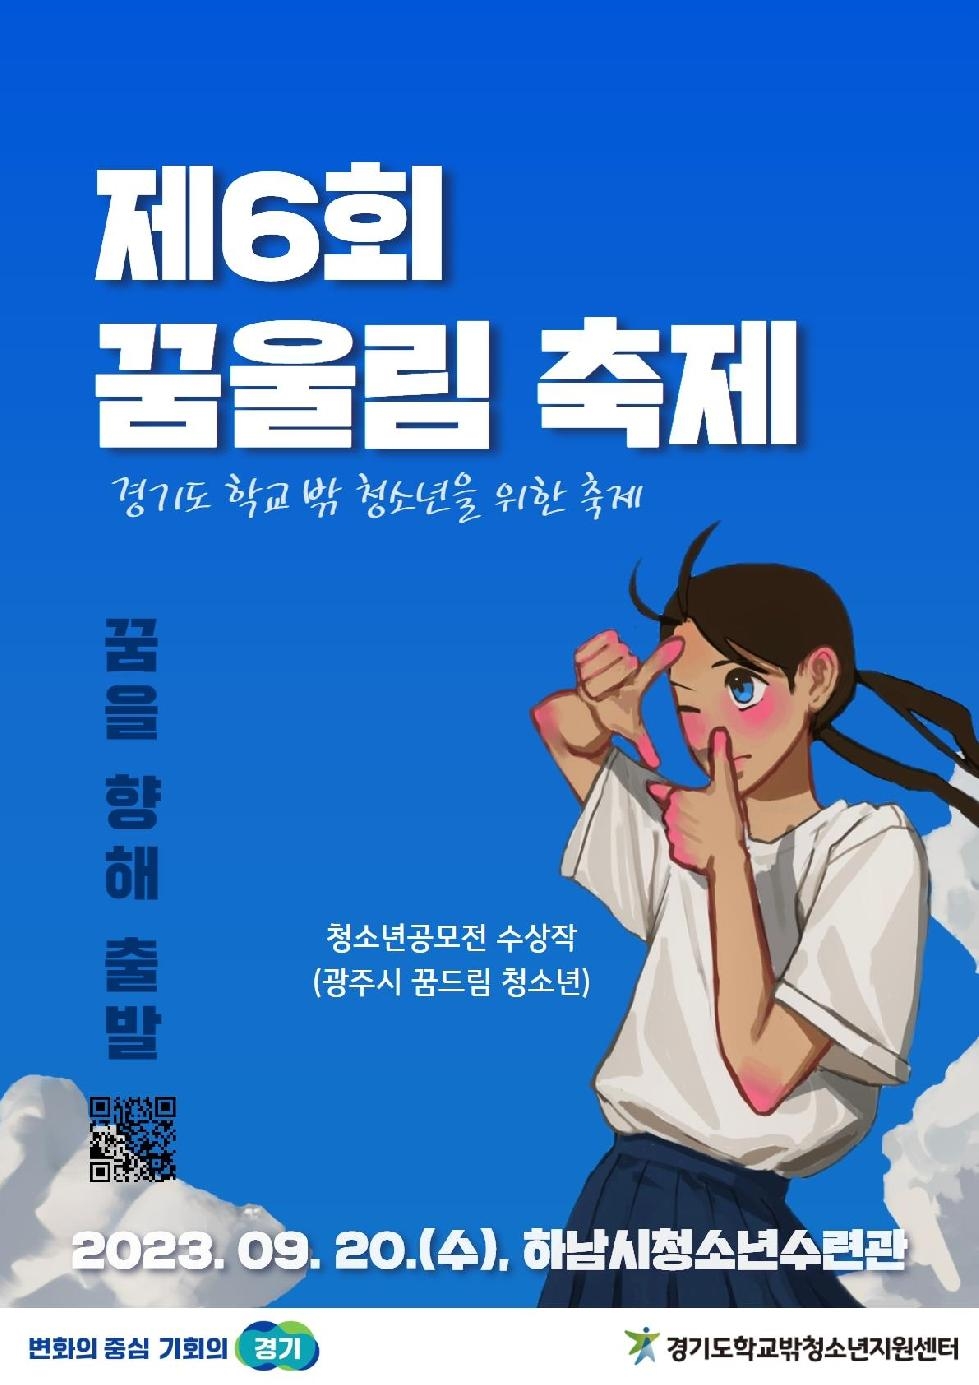 경기도, 20일 학교 밖 청소년을 위한 제6회 꿈울림 축제 열어